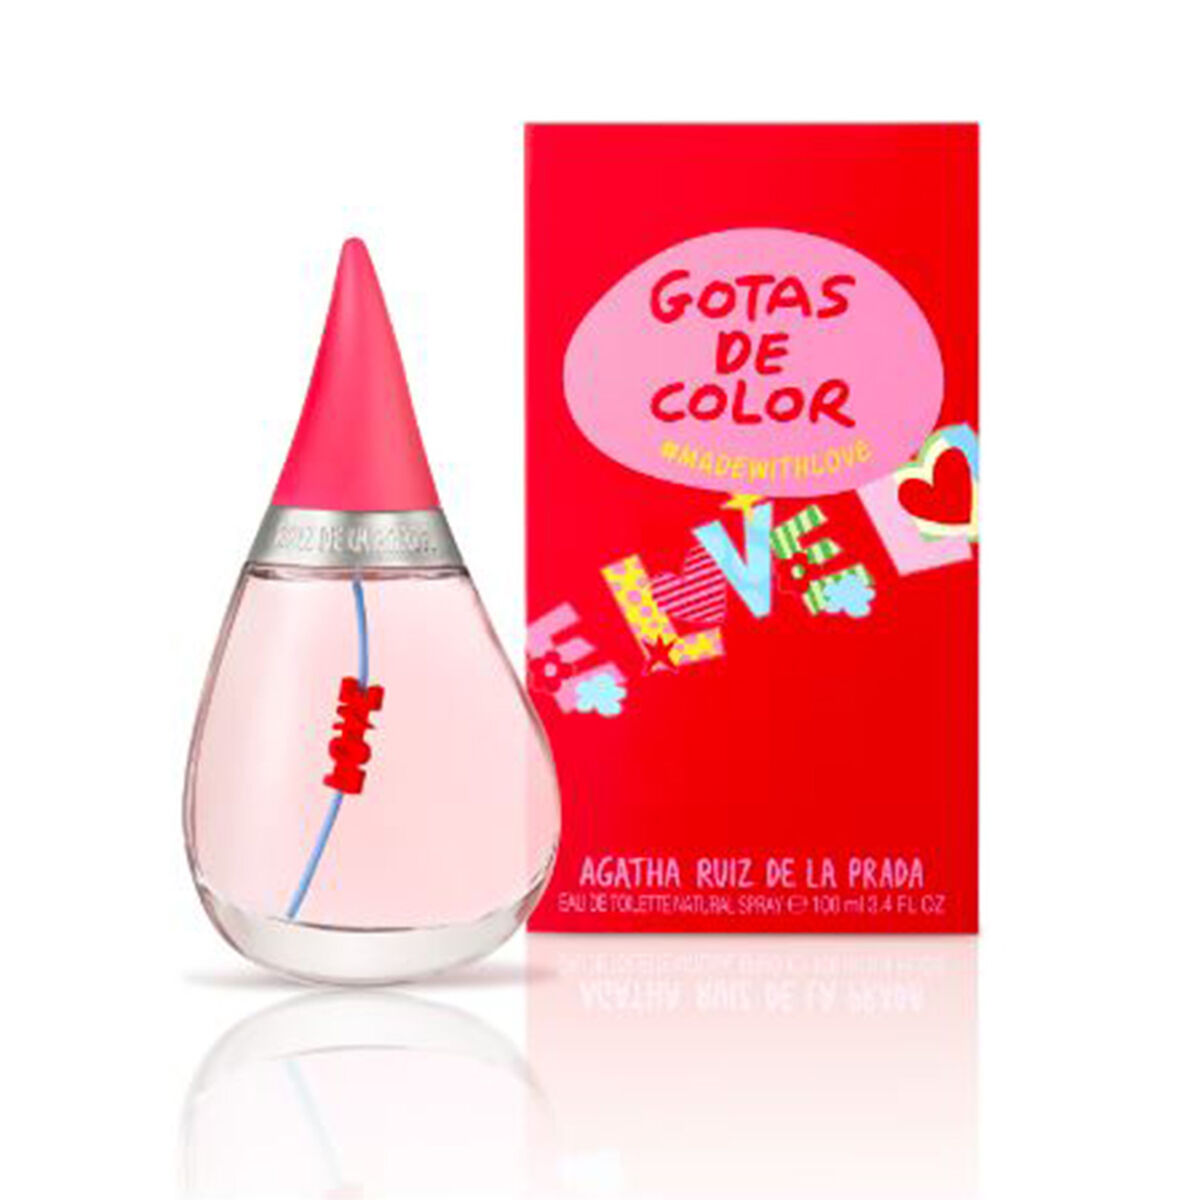 Perfume Agatha Ruiz De La Prada Gotas de Color Made With Love EDT 100 ml |  Ofertas en 